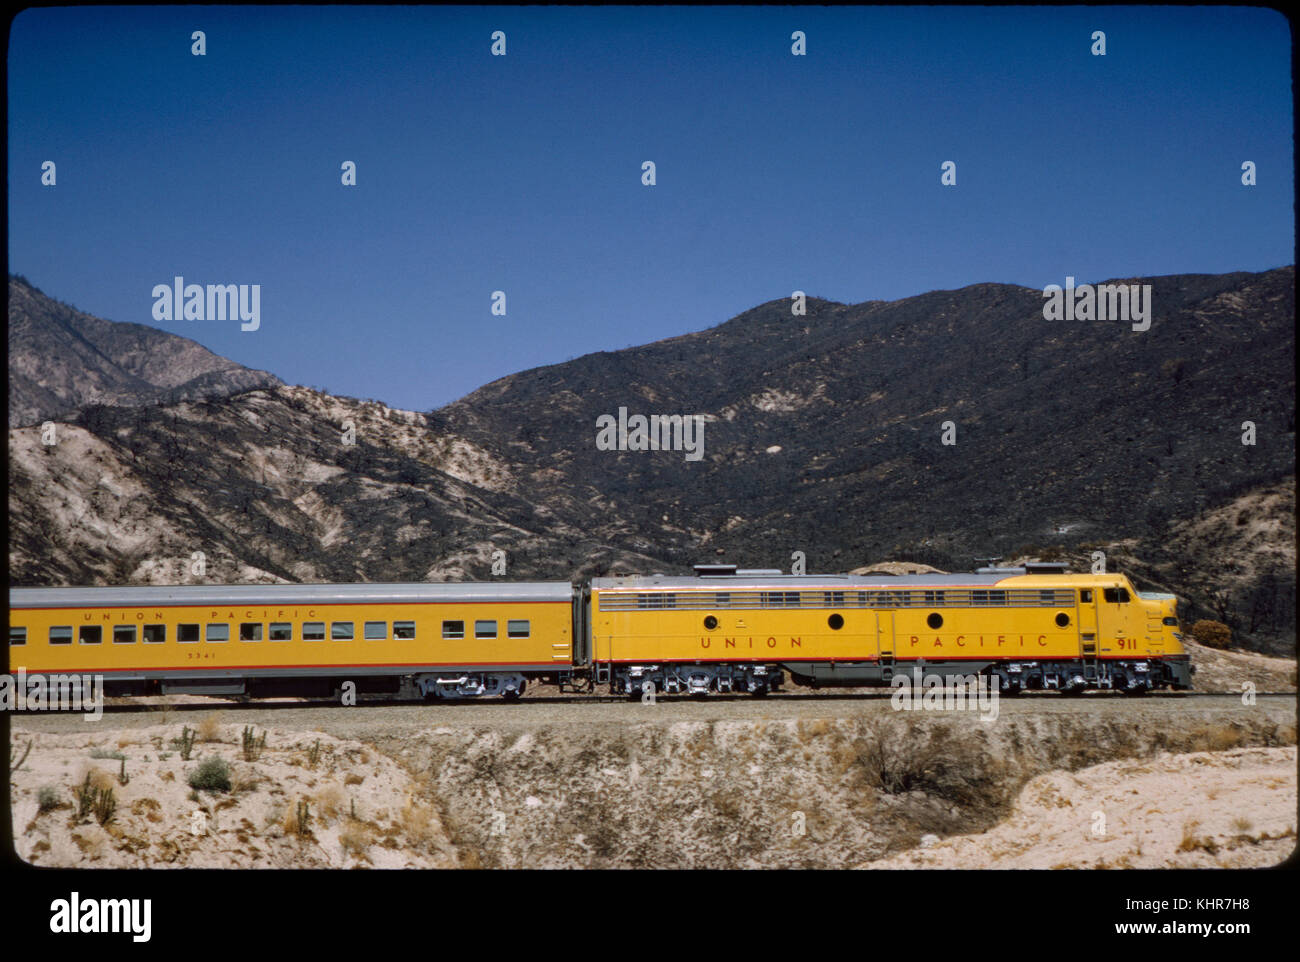 Union Pacific train locomotive diesel, Sullivan's curve, cajon pass, California, USA, 1964 Banque D'Images